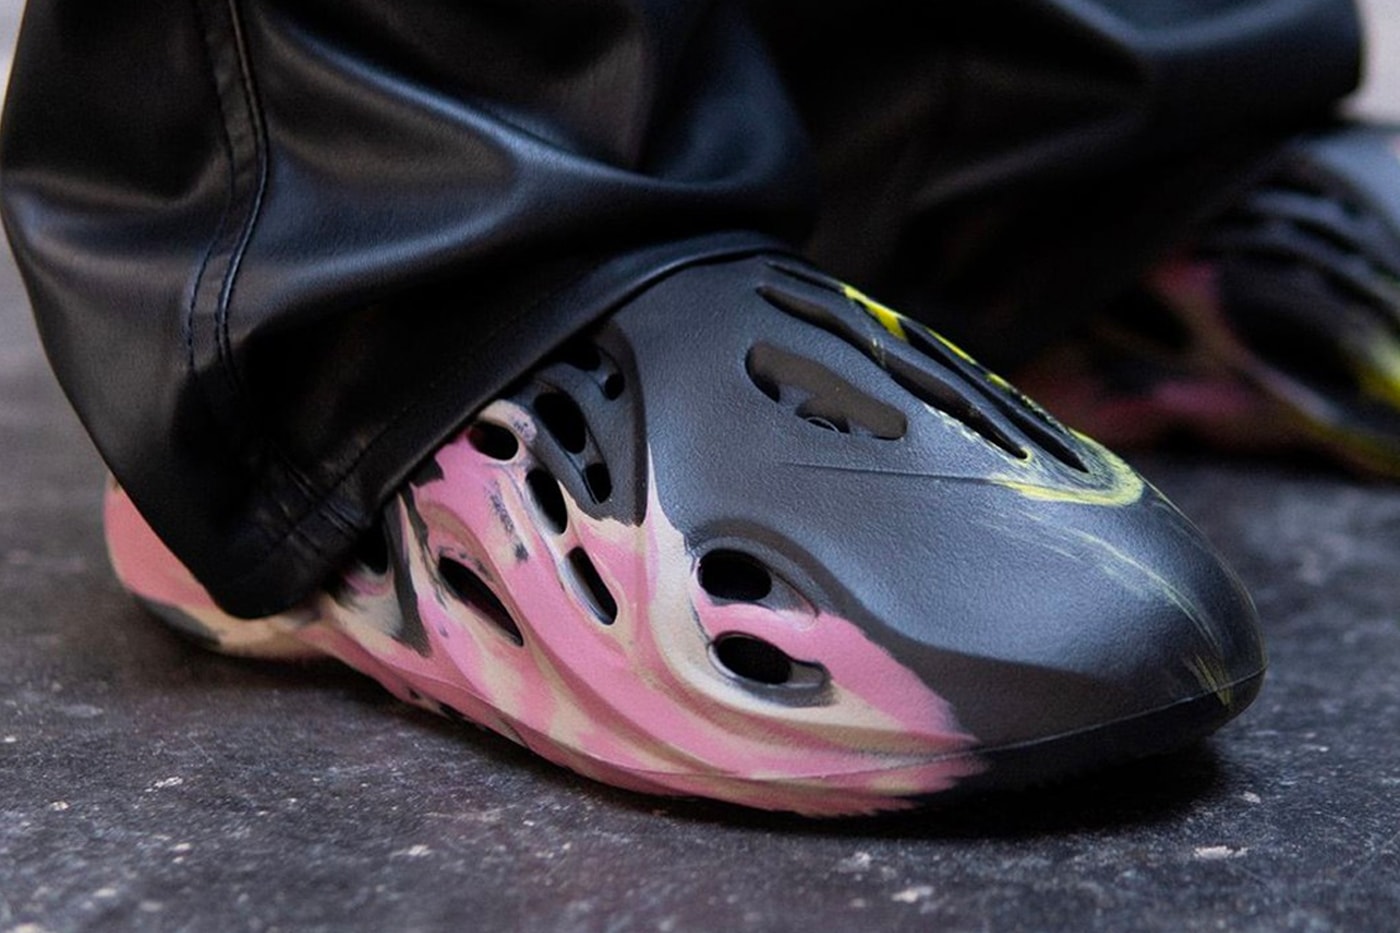 adidas YEEZY Foam Runner MX Carbon Closer Look